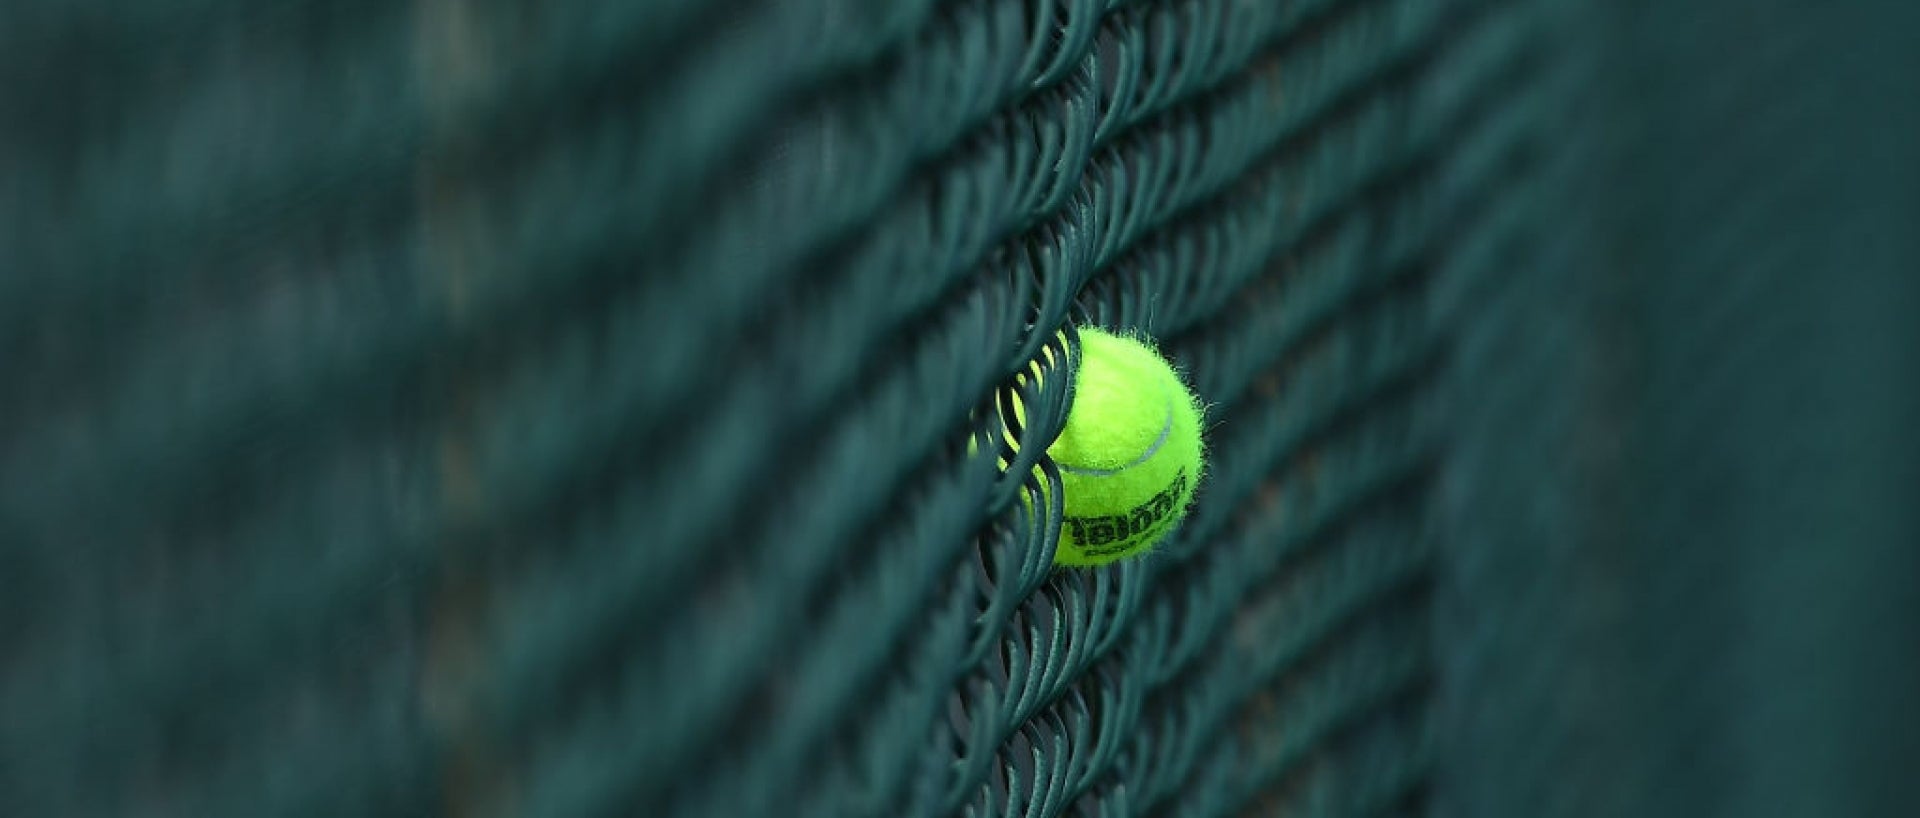 Tennis ball in gate